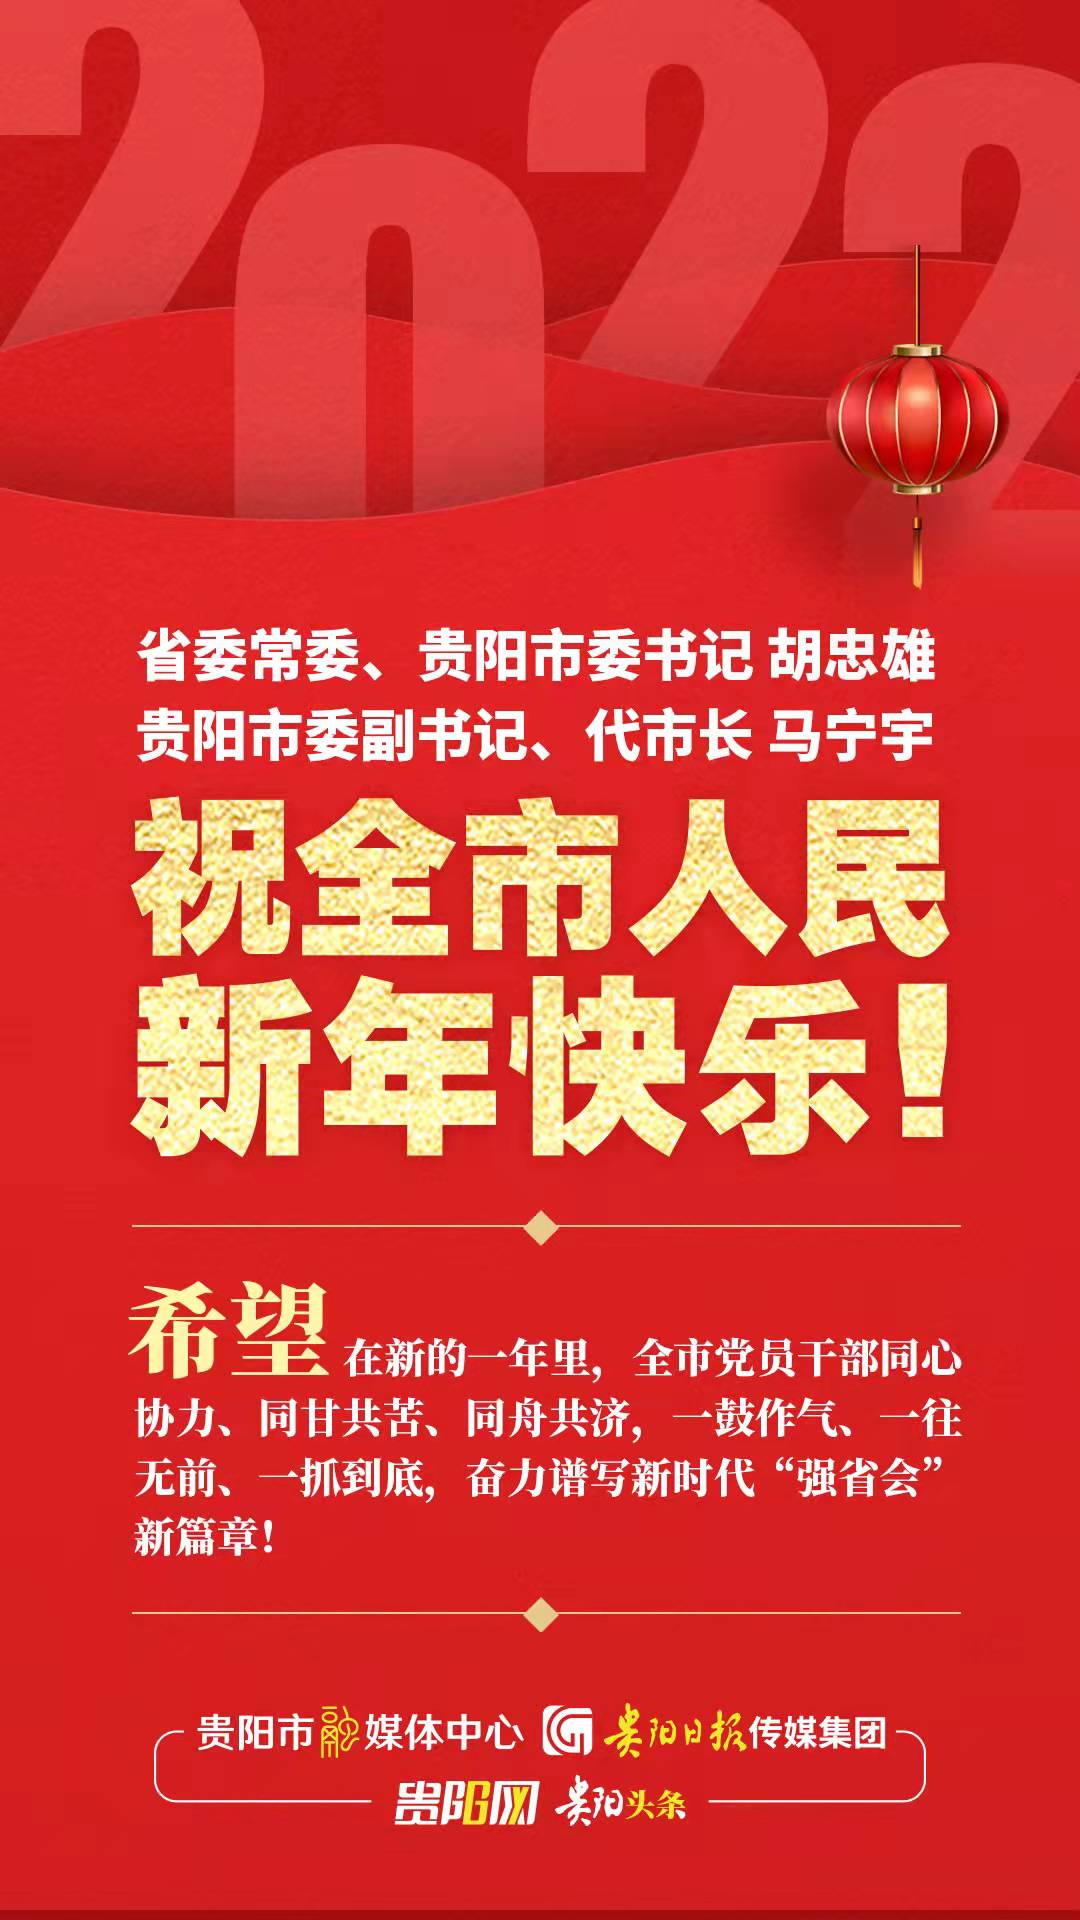 贵阳市委书记胡忠雄、代市长马宁宇向全市人民致以新年的祝贺